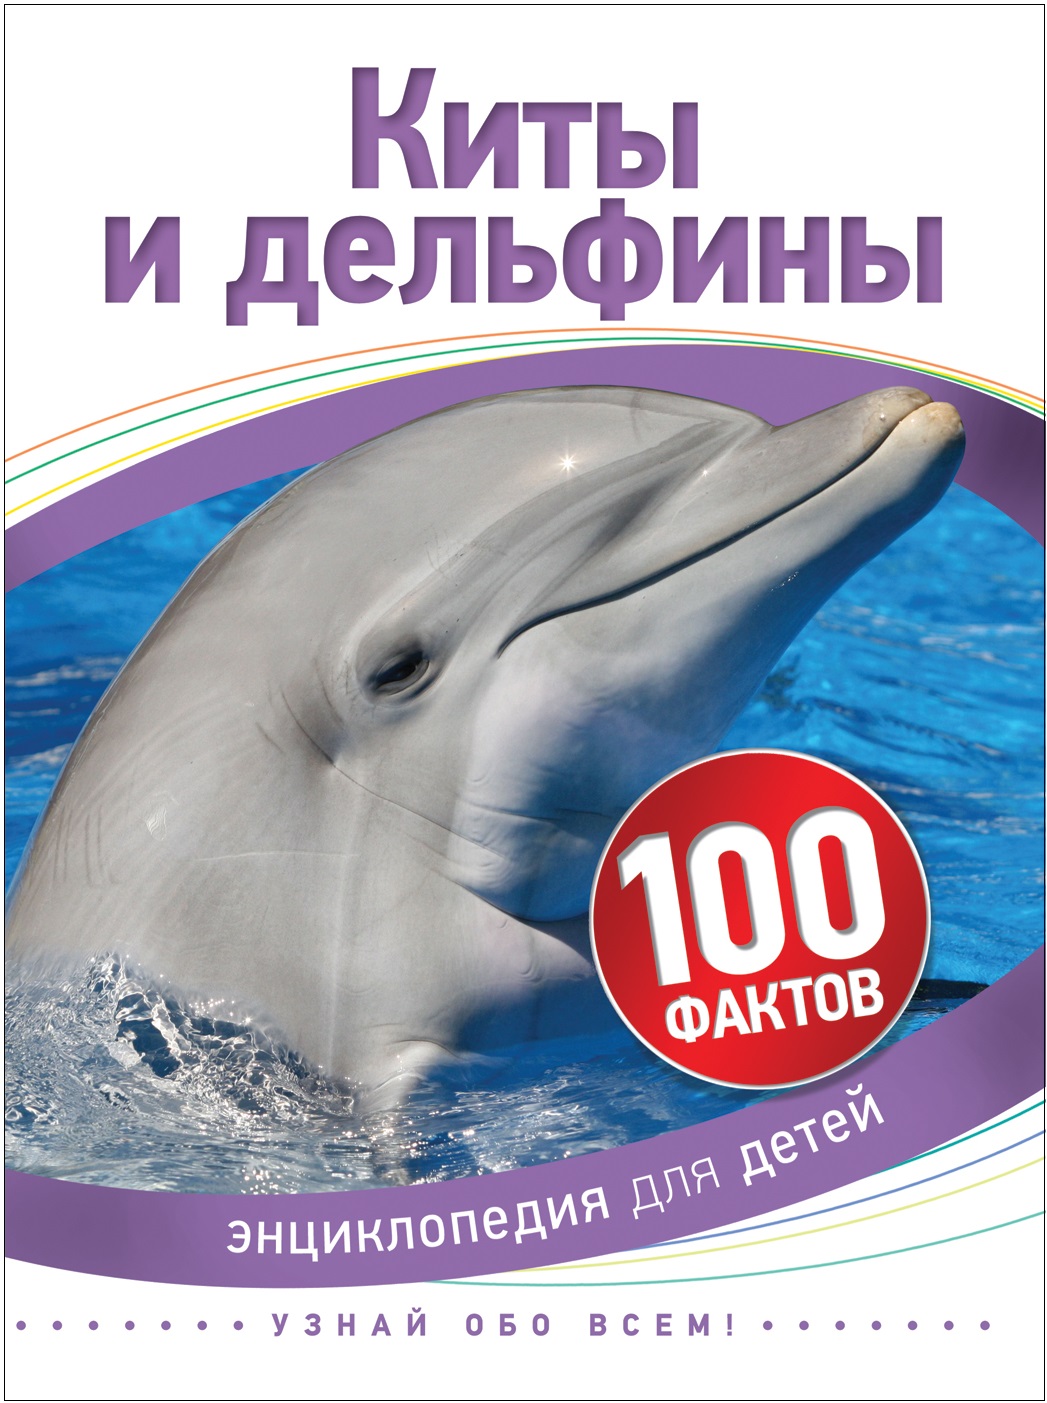 Книга 35069 "Киты и дельфины" 100 фактов Росмэн - Уральск 